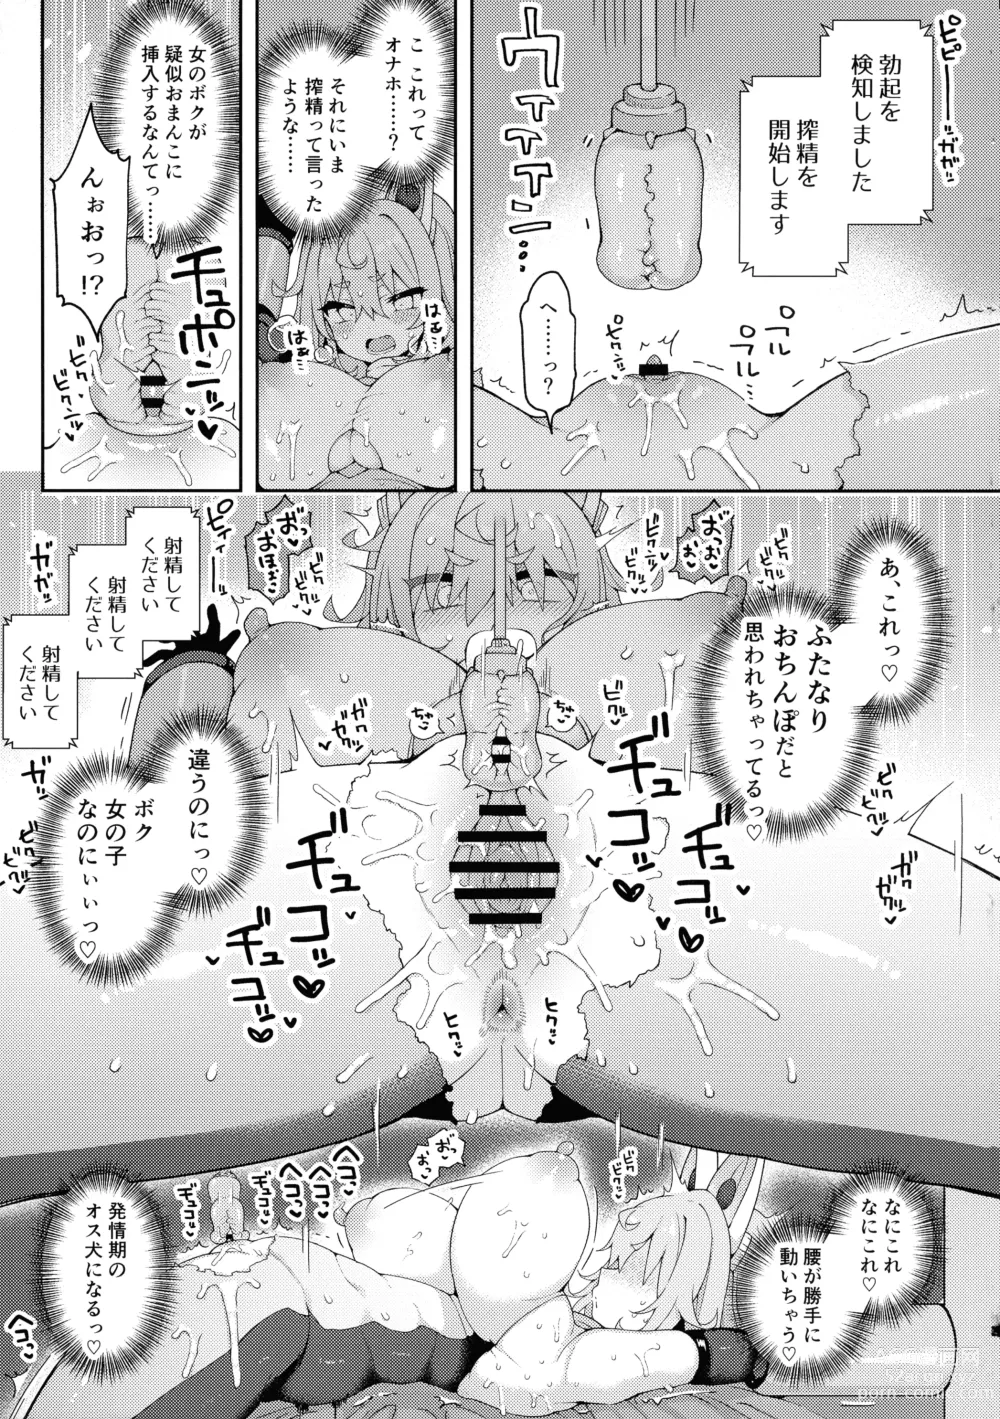 Page 9 of doujinshi DaviGaki WakaraSex 3 -Ero Trap Dungeon wa Kiken ga Ippai-